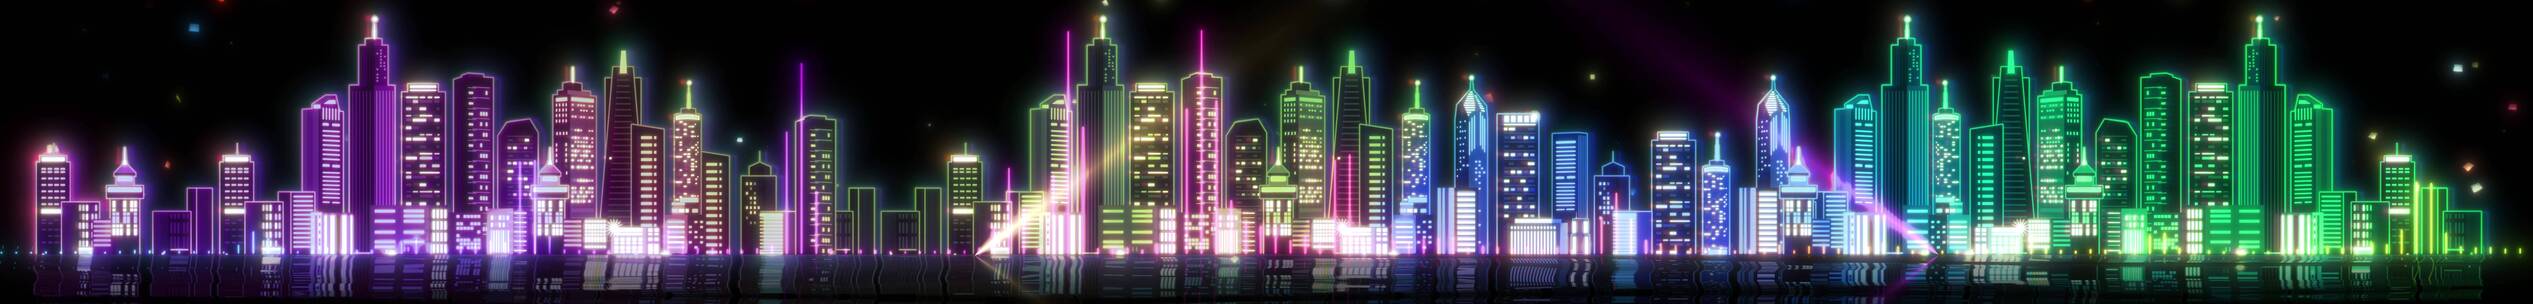 城市夜景 霓虹灯